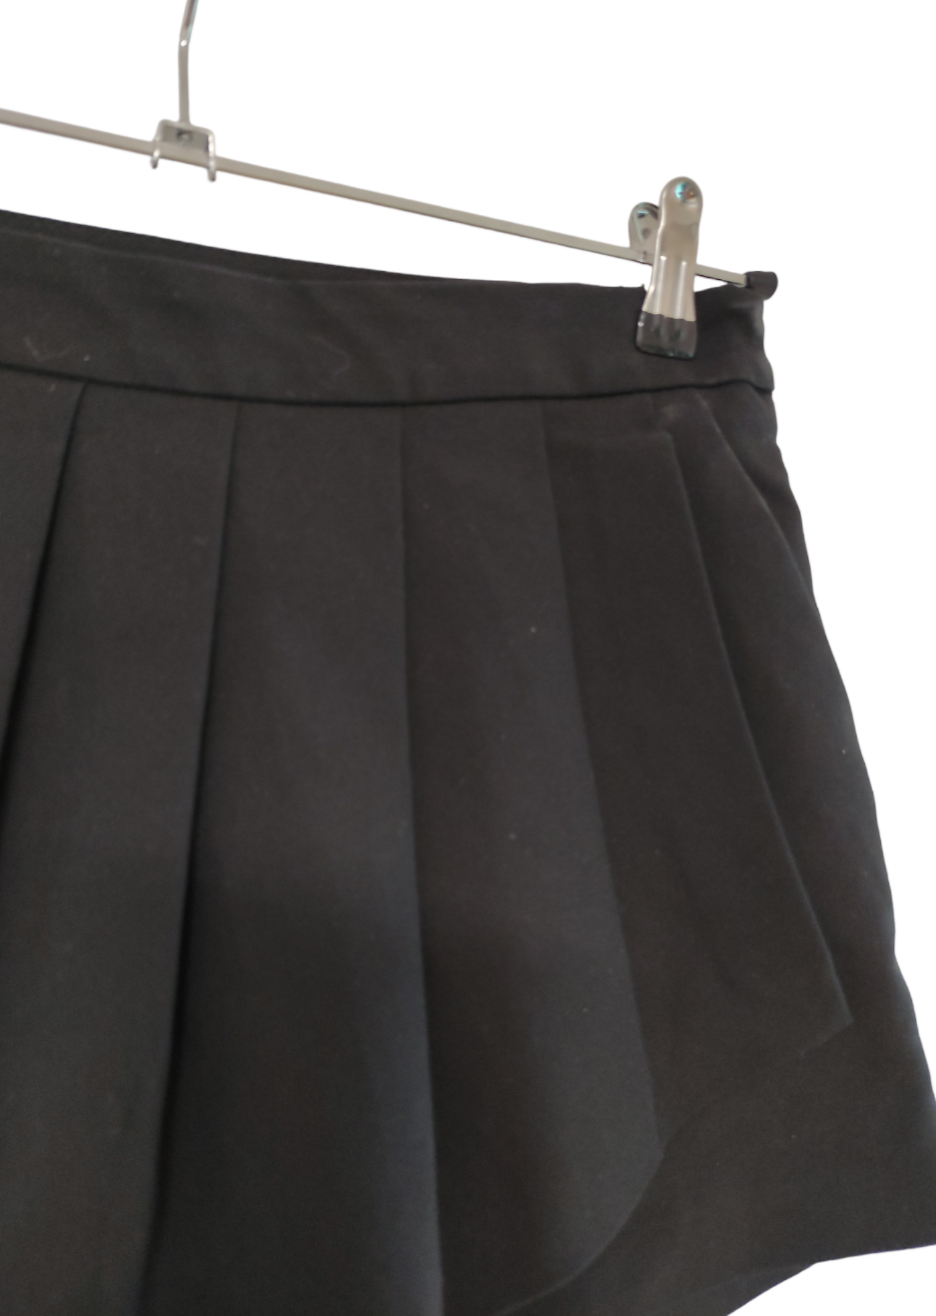 Γυναικείο Σορτς / Φούστα σε Μαύρο Χρώμα (Medium)